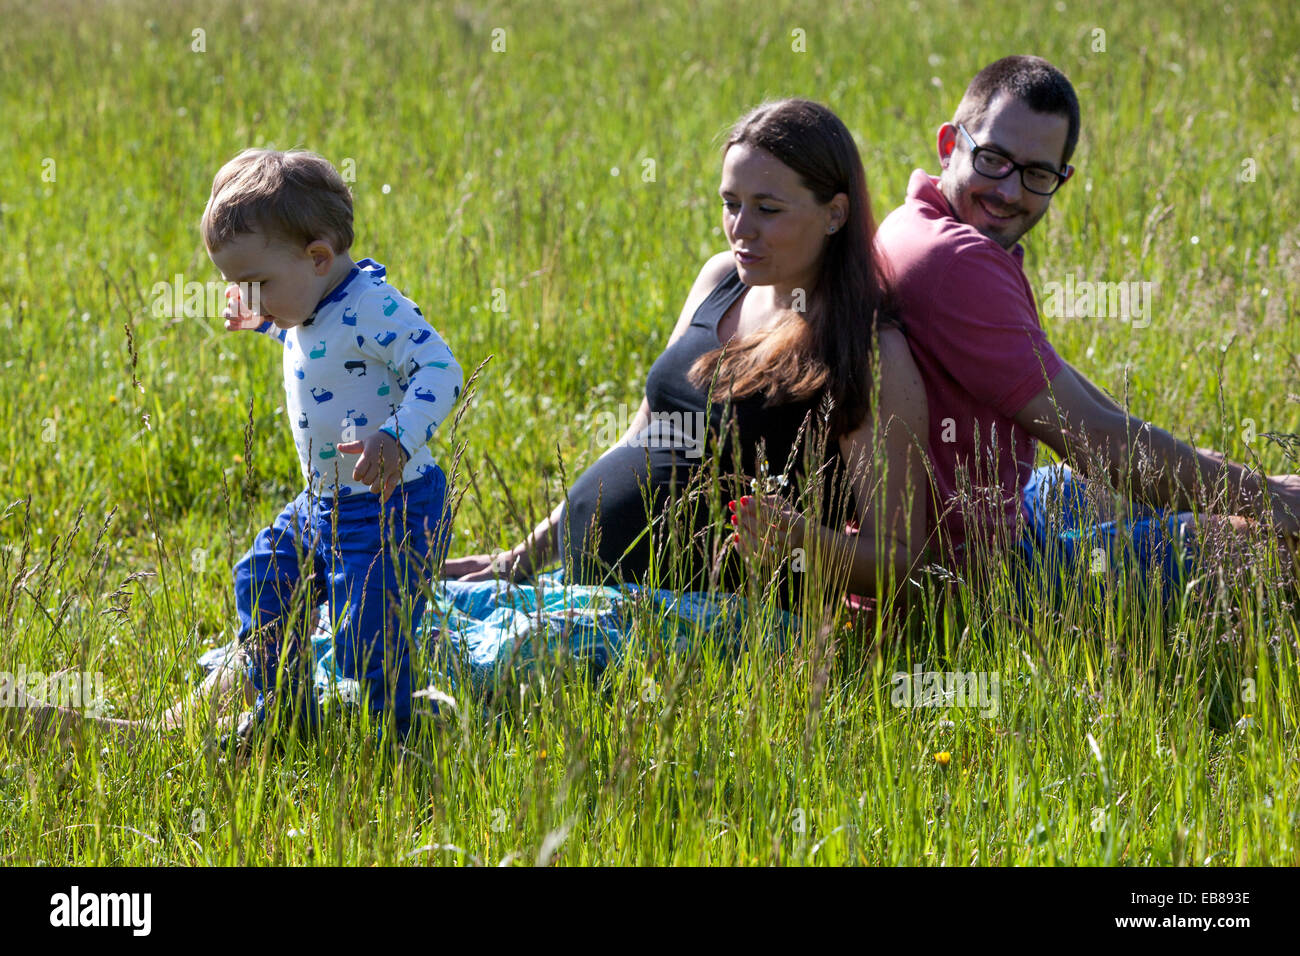 Una familia feliz, una mujer embarazada con su marido y su niño a pasar tiempo juntos y jugar a juegos en una pradera de verano Foto de stock